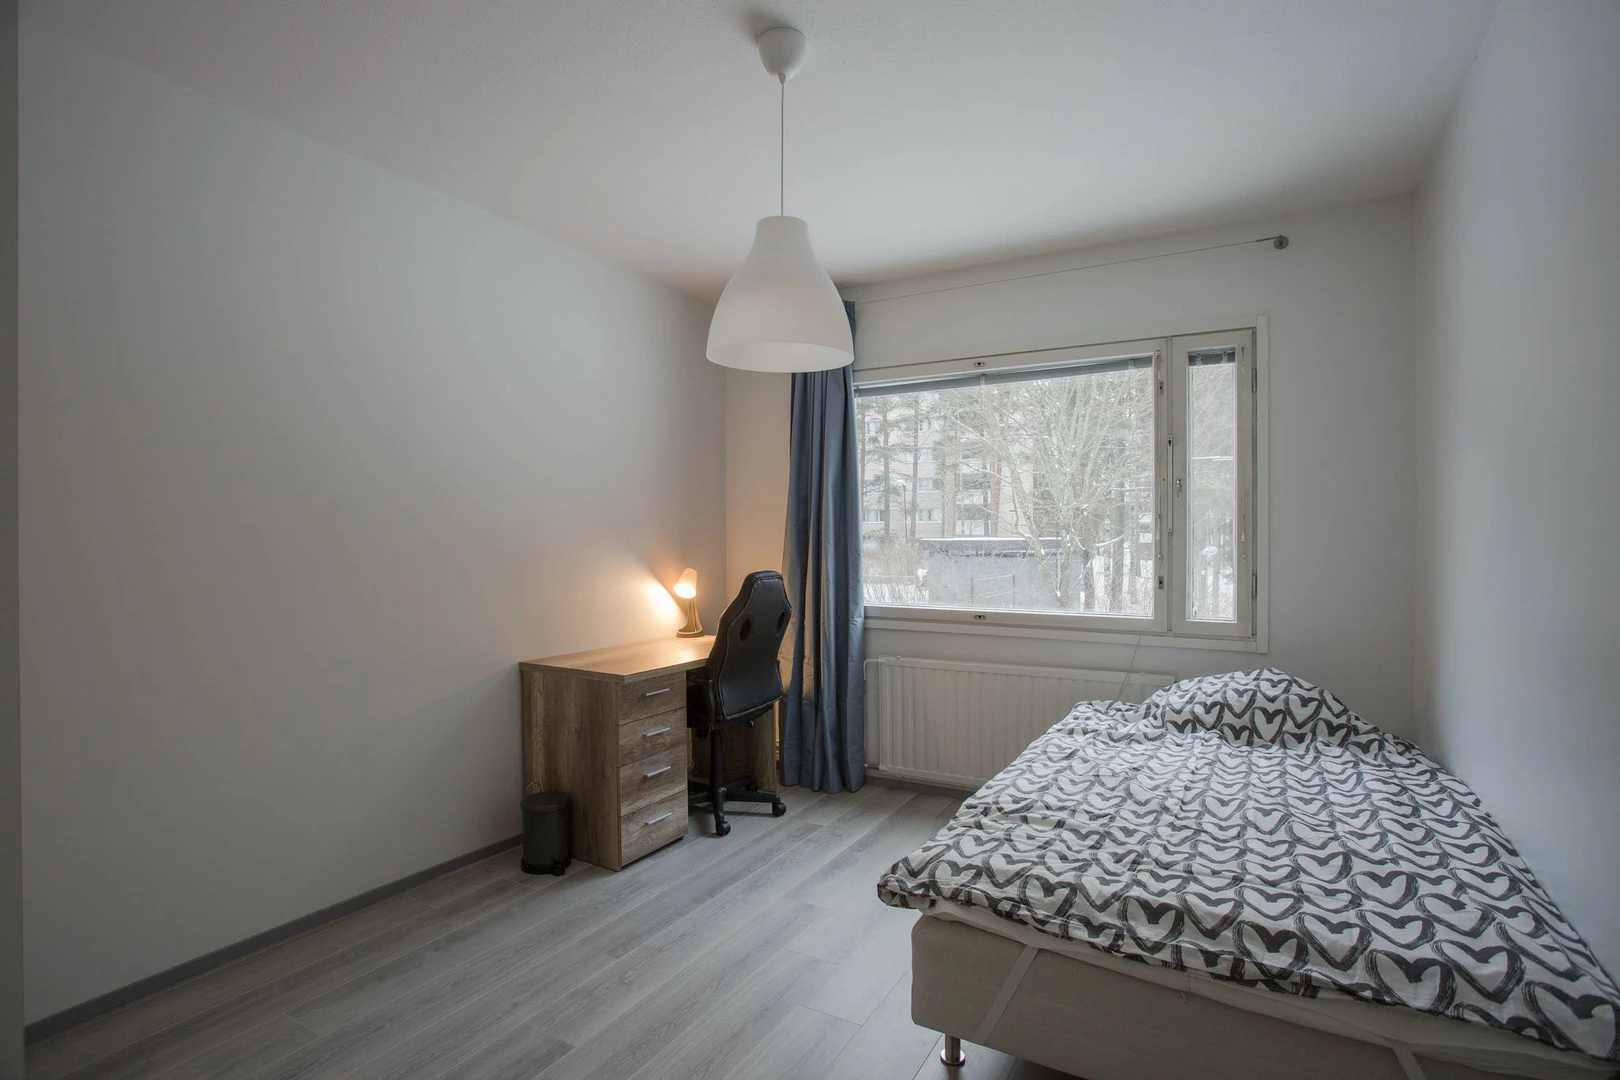 Monatliche Vermietung von Zimmern in Helsinki